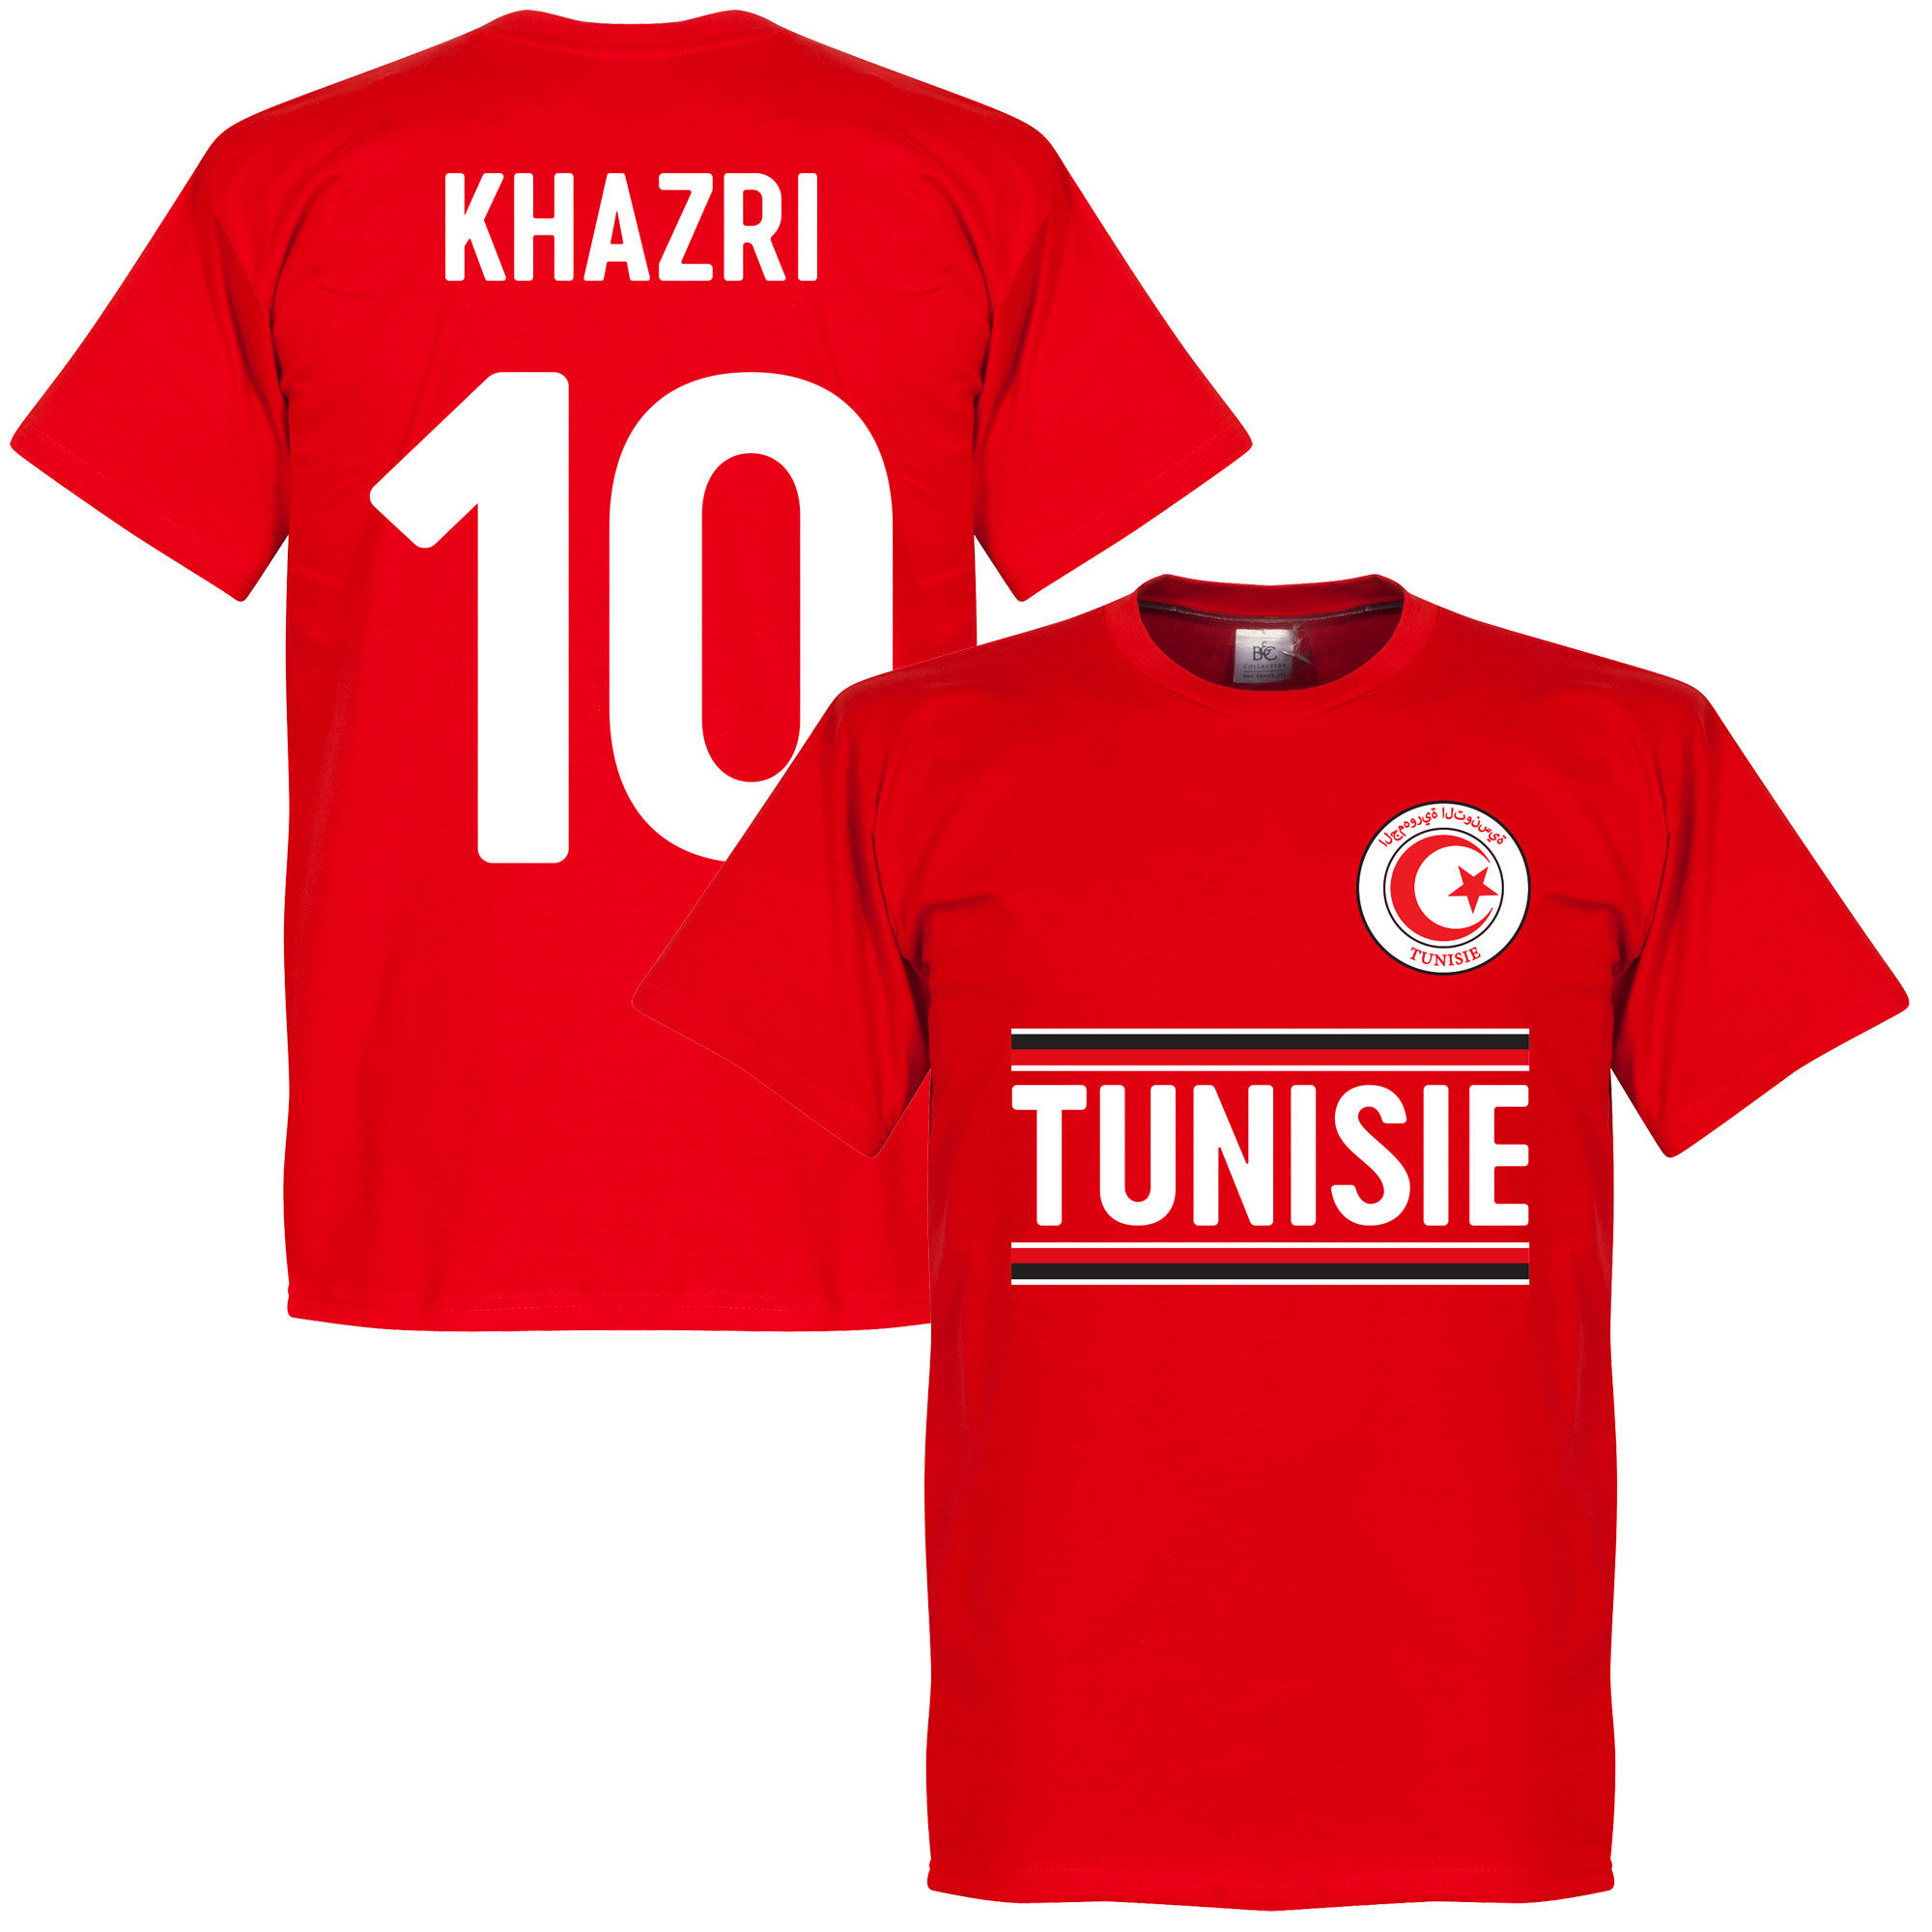 Tunisko - Tričko - červené, Wahbi Khazri, číslo 10